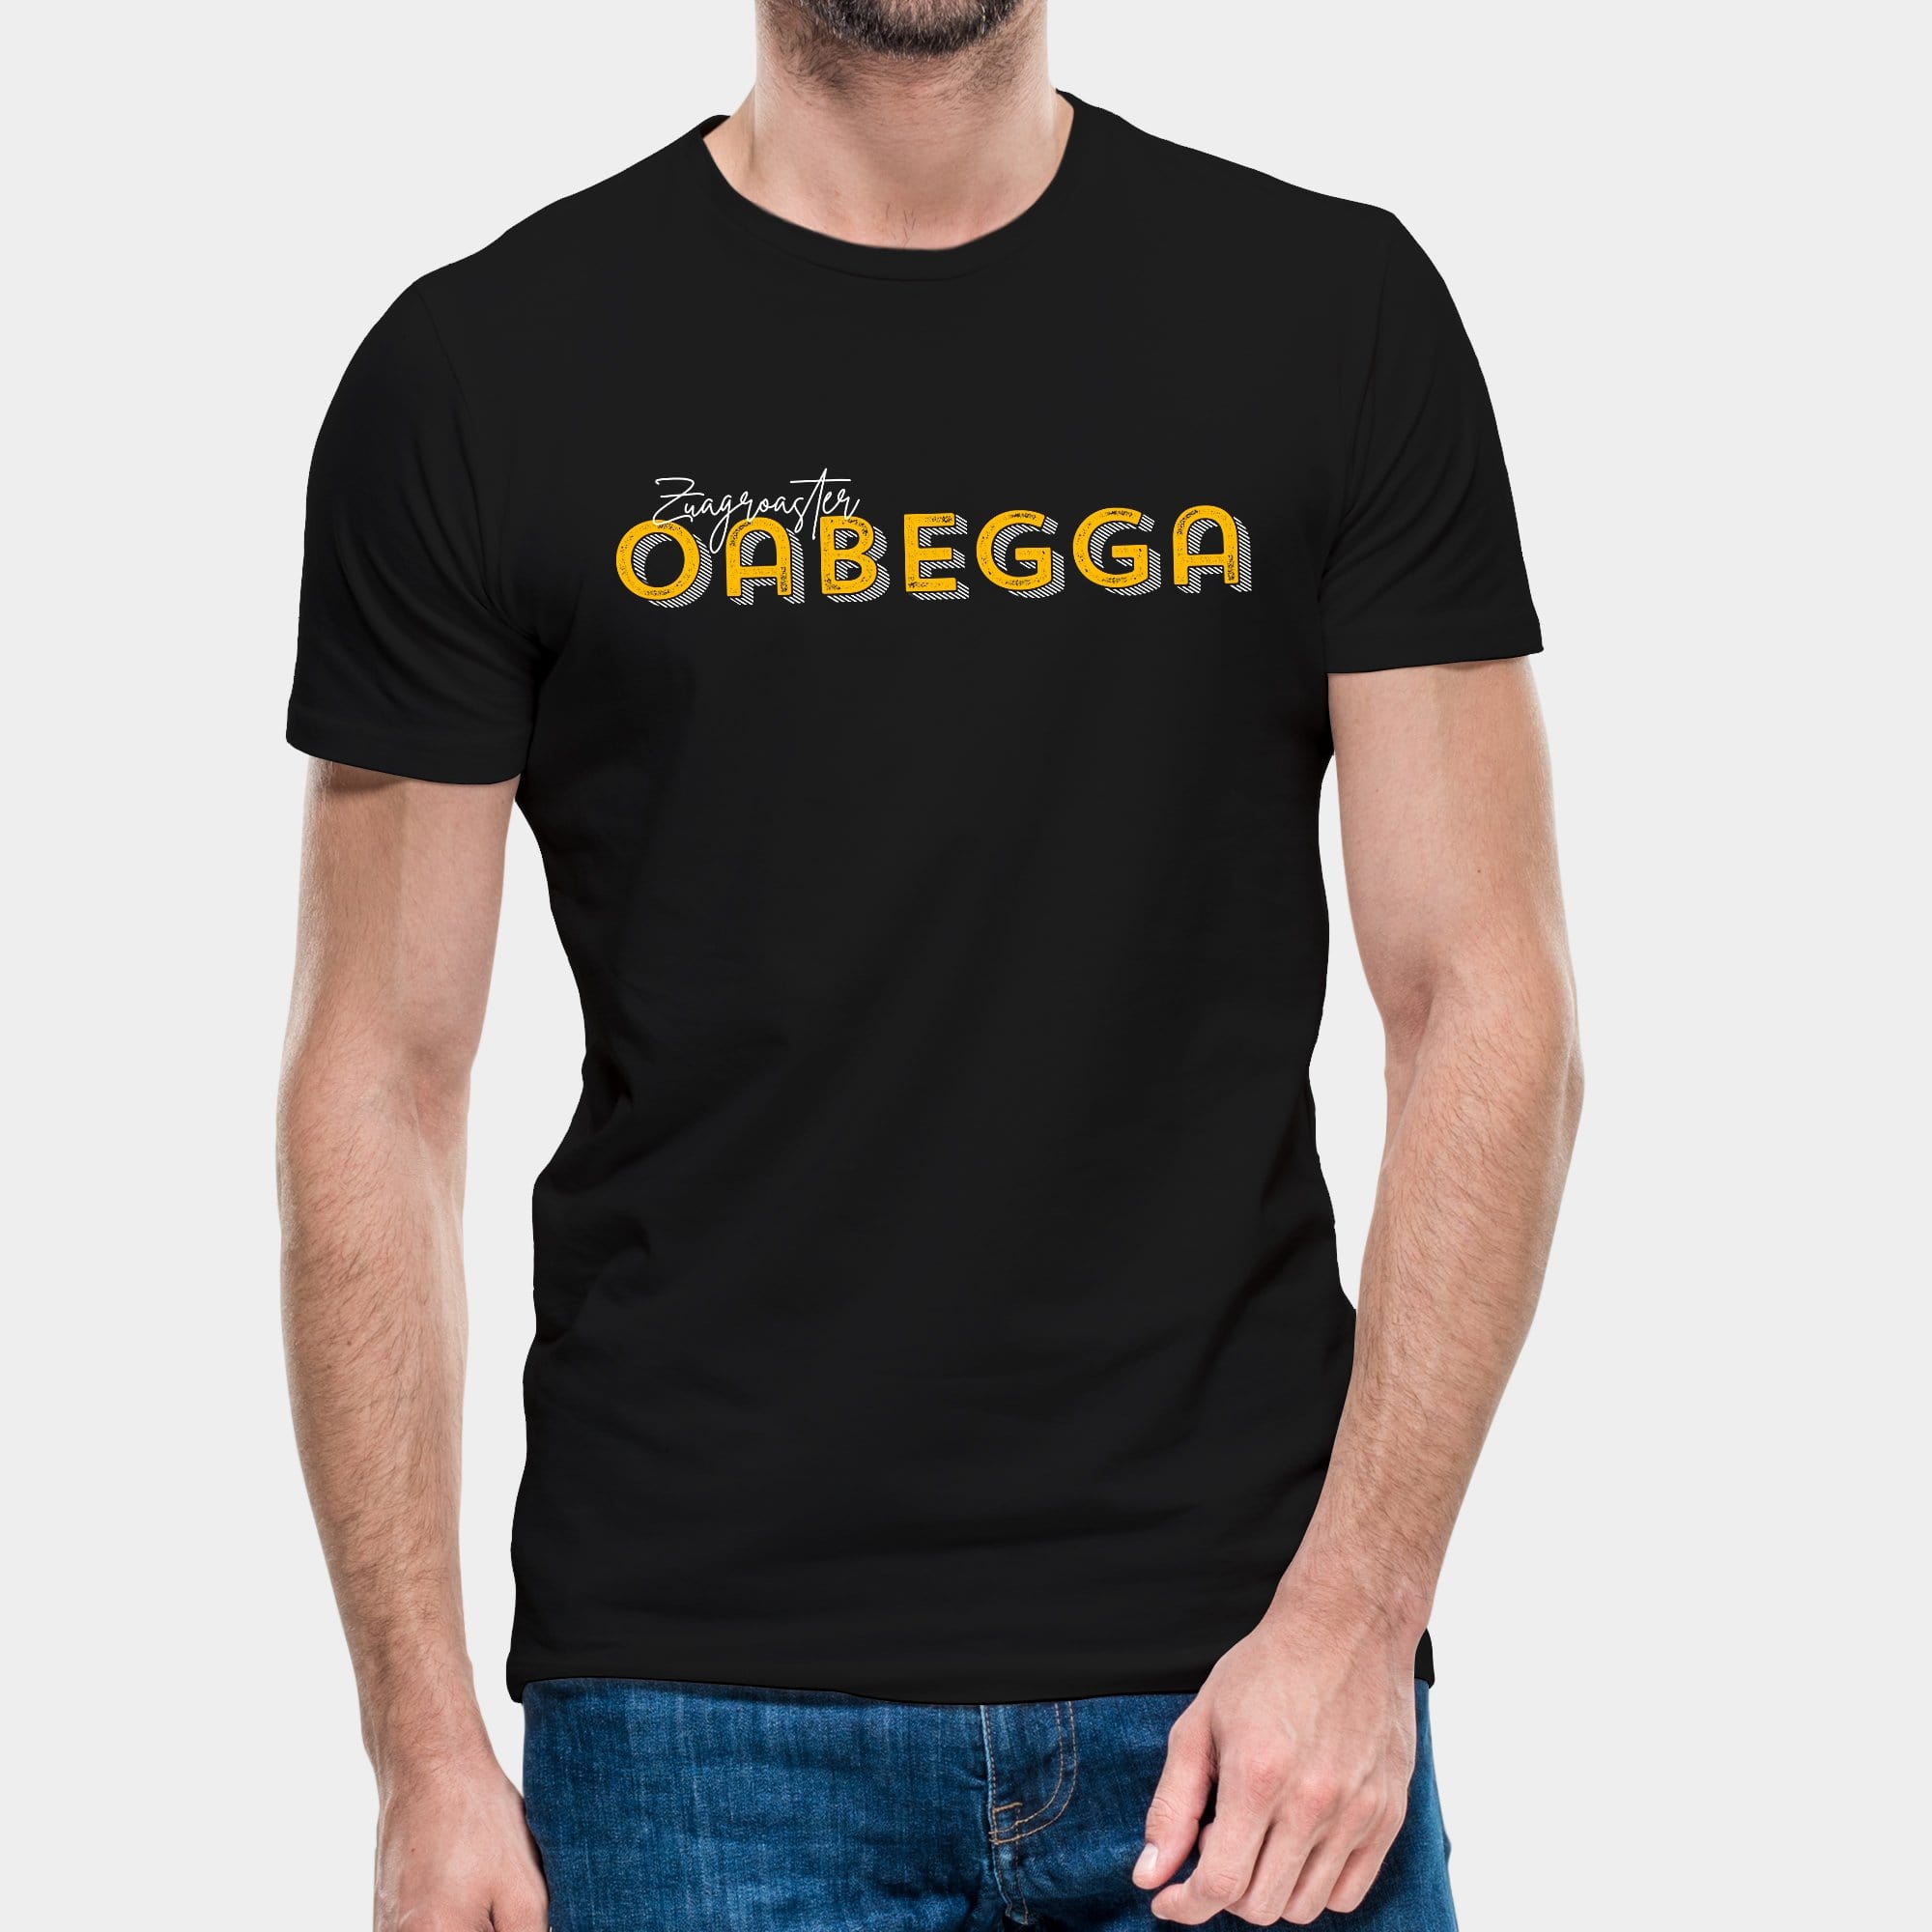 Projekt Herren-T-Shirt "Zuagroaster Oabegga" S / schwarz - aus nachhaltiger und fairer Produktion